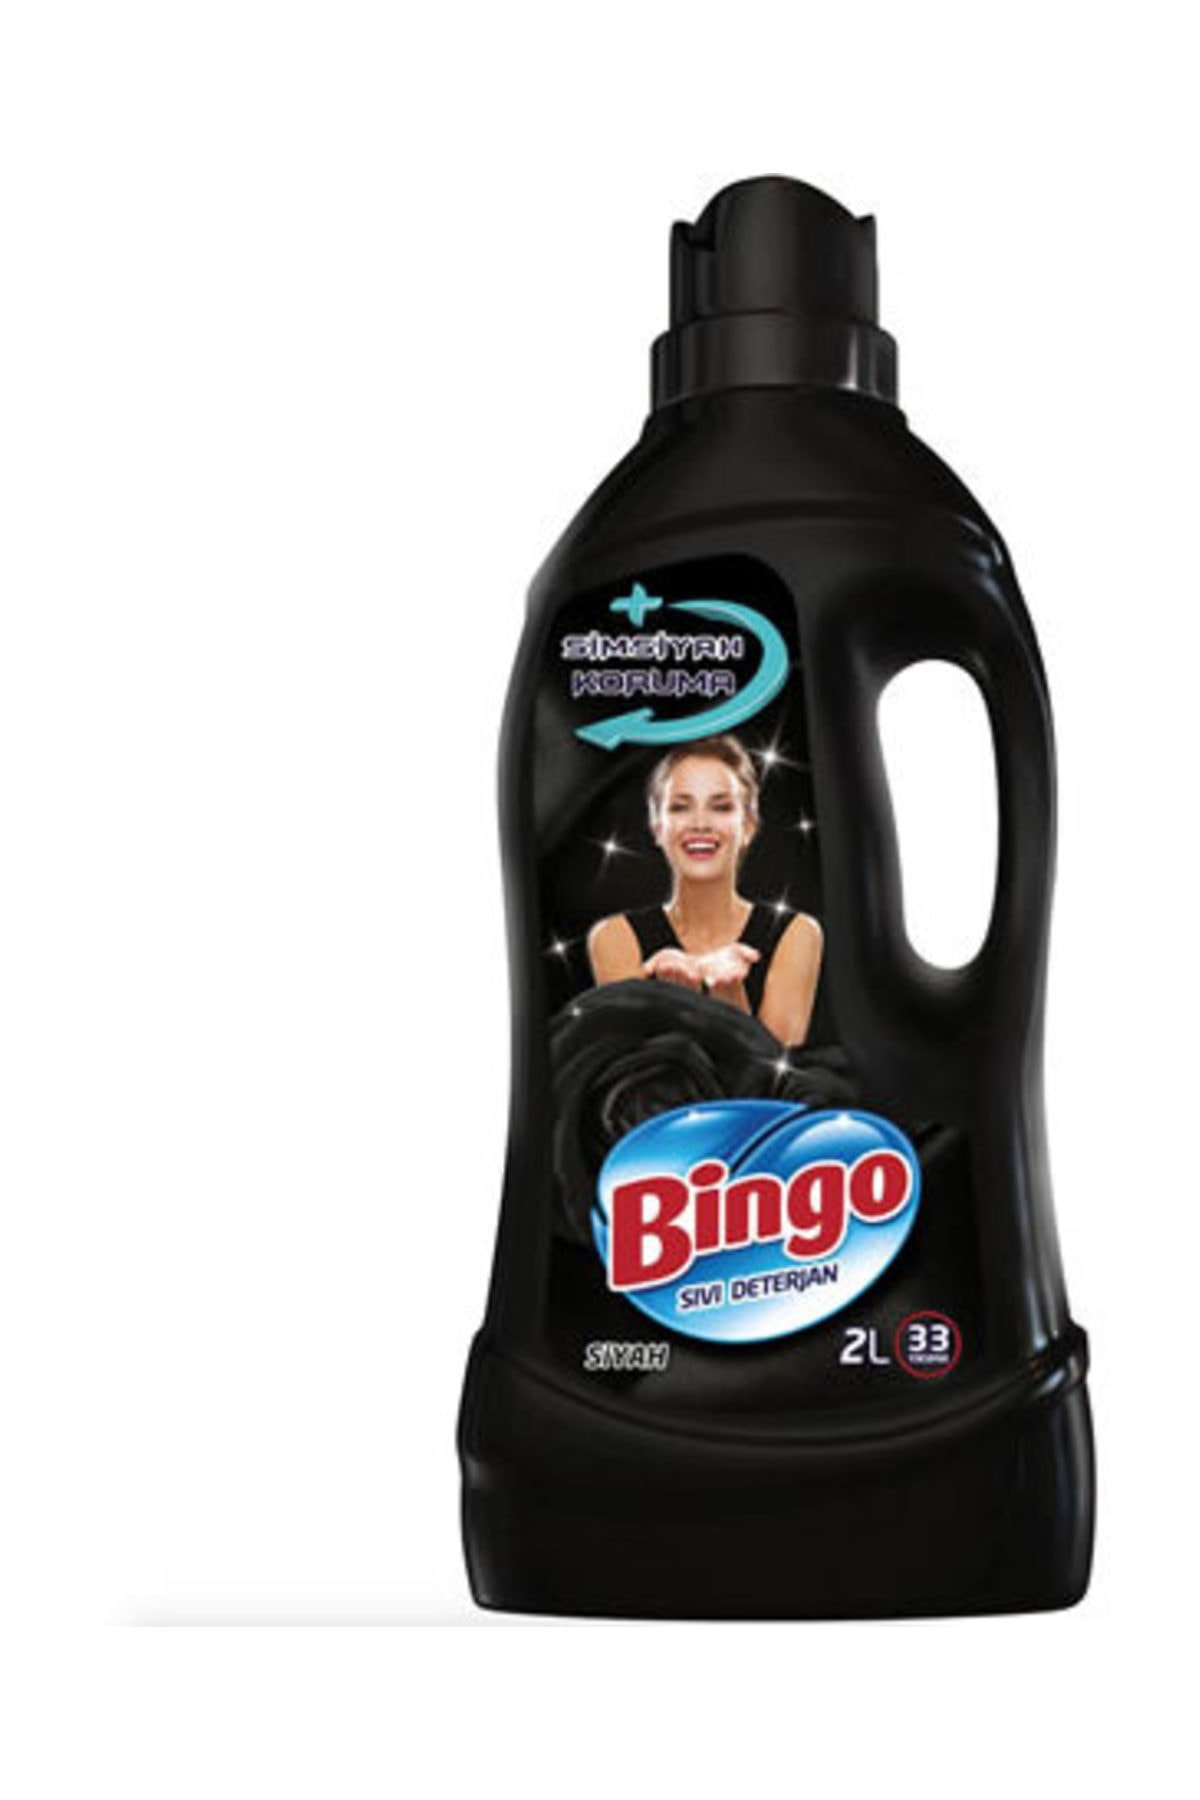 Bingo Bingo Matik Siyahlara Özel Bakım Serisi Sıvı Çamaşır Deterjanı 2 L 33 Yıkama